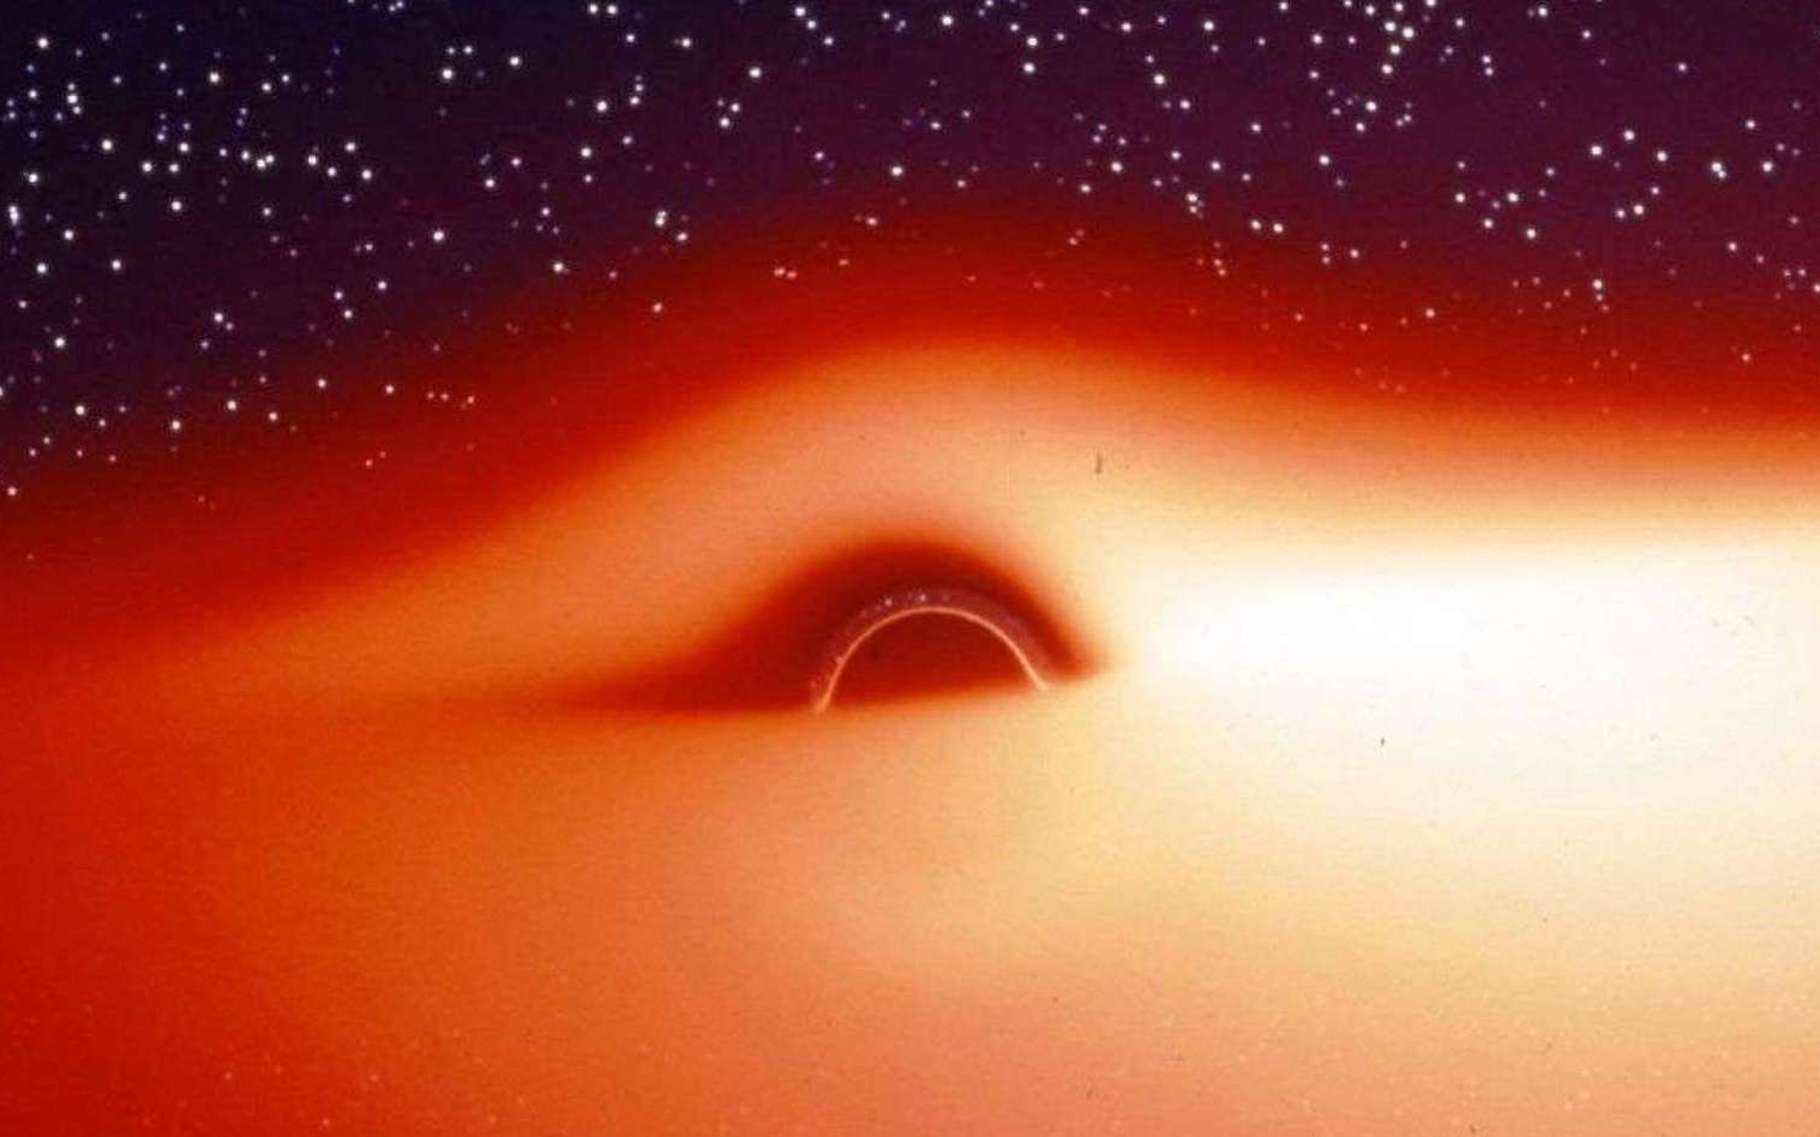 Le champ de gravitation d'un trou noir stellaire entouré d'un disque d'accrétion chaud et lumineux déforme fortement l'image de ce disque. On peut s'en rendre compte avec cette image, extraite d'une simulation de ce que verrait un observateur s'approchant de l'astre compact selon une direction légèrement inclinée au-dessus du disque d'accrétion. La partie du disque située derrière le trou noir semble tordue à 90° et devient visible. Jean-Pierre Luminet a fait la première simulation de ces images en 1979, comme il l'explique dans une vidéo au début de cet article. © Jean-Pierre Luminet, Jean-Alain Marck